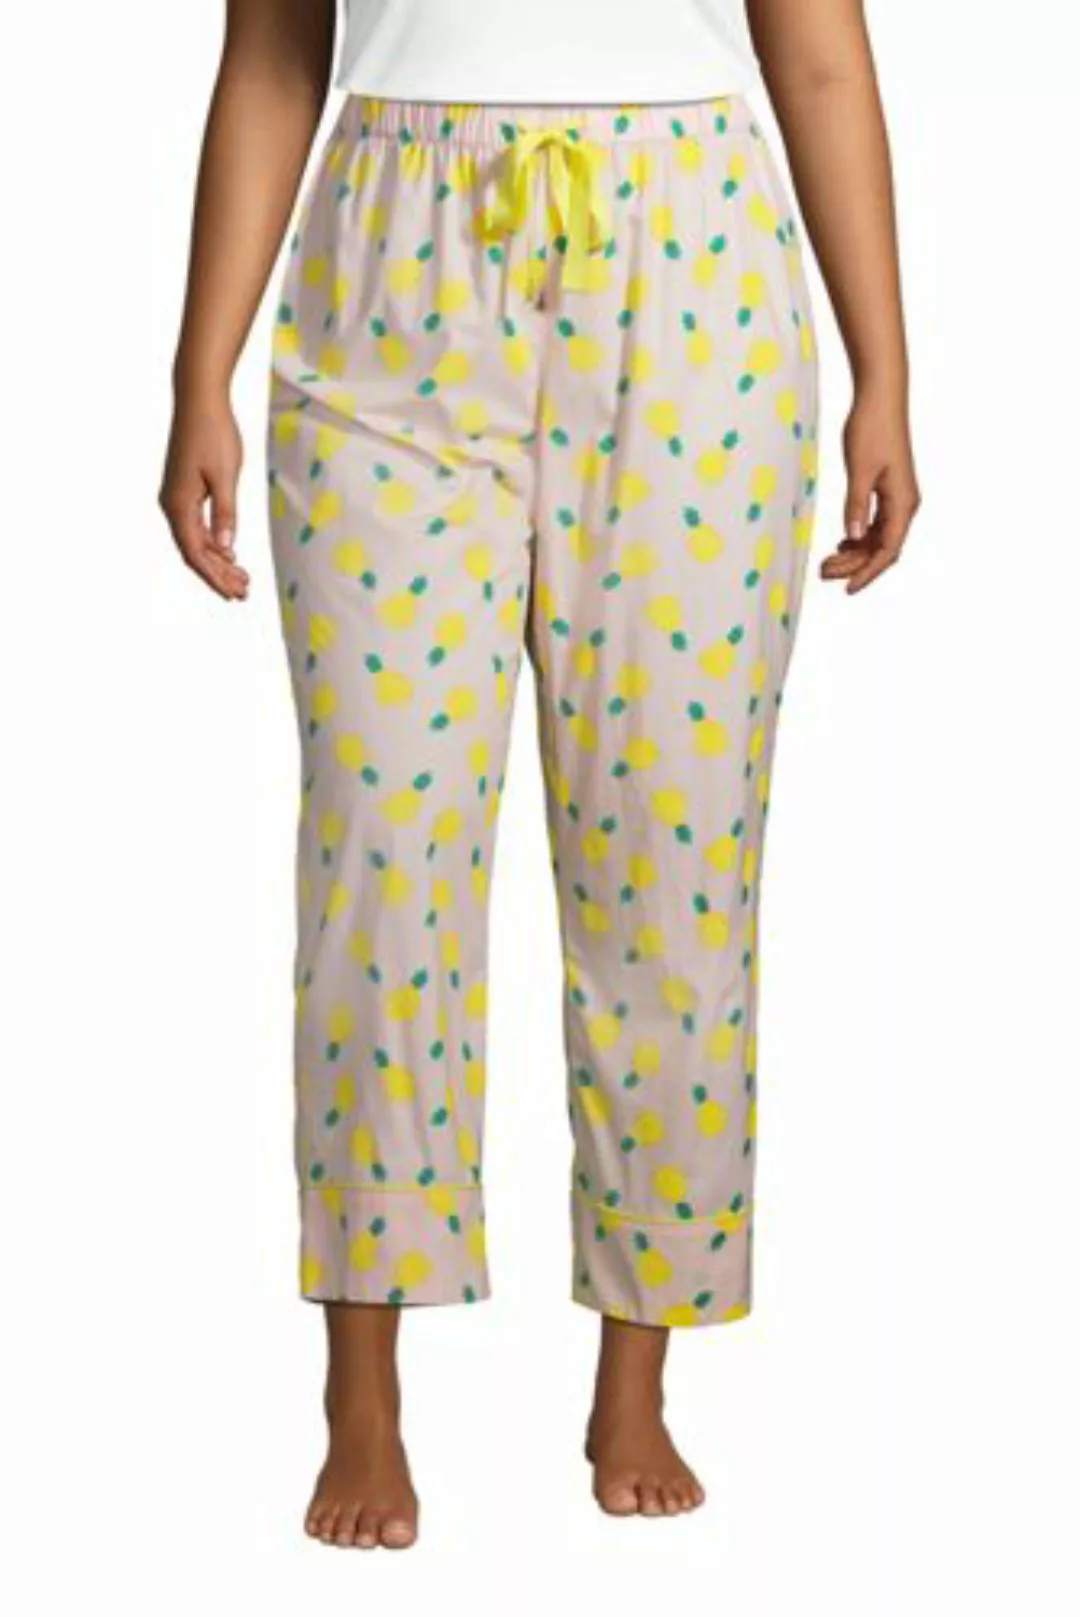 Popelin-Pyjamahose in 7/8-Länge in großen Größen, Damen, Größe: 48-50 Plusg günstig online kaufen